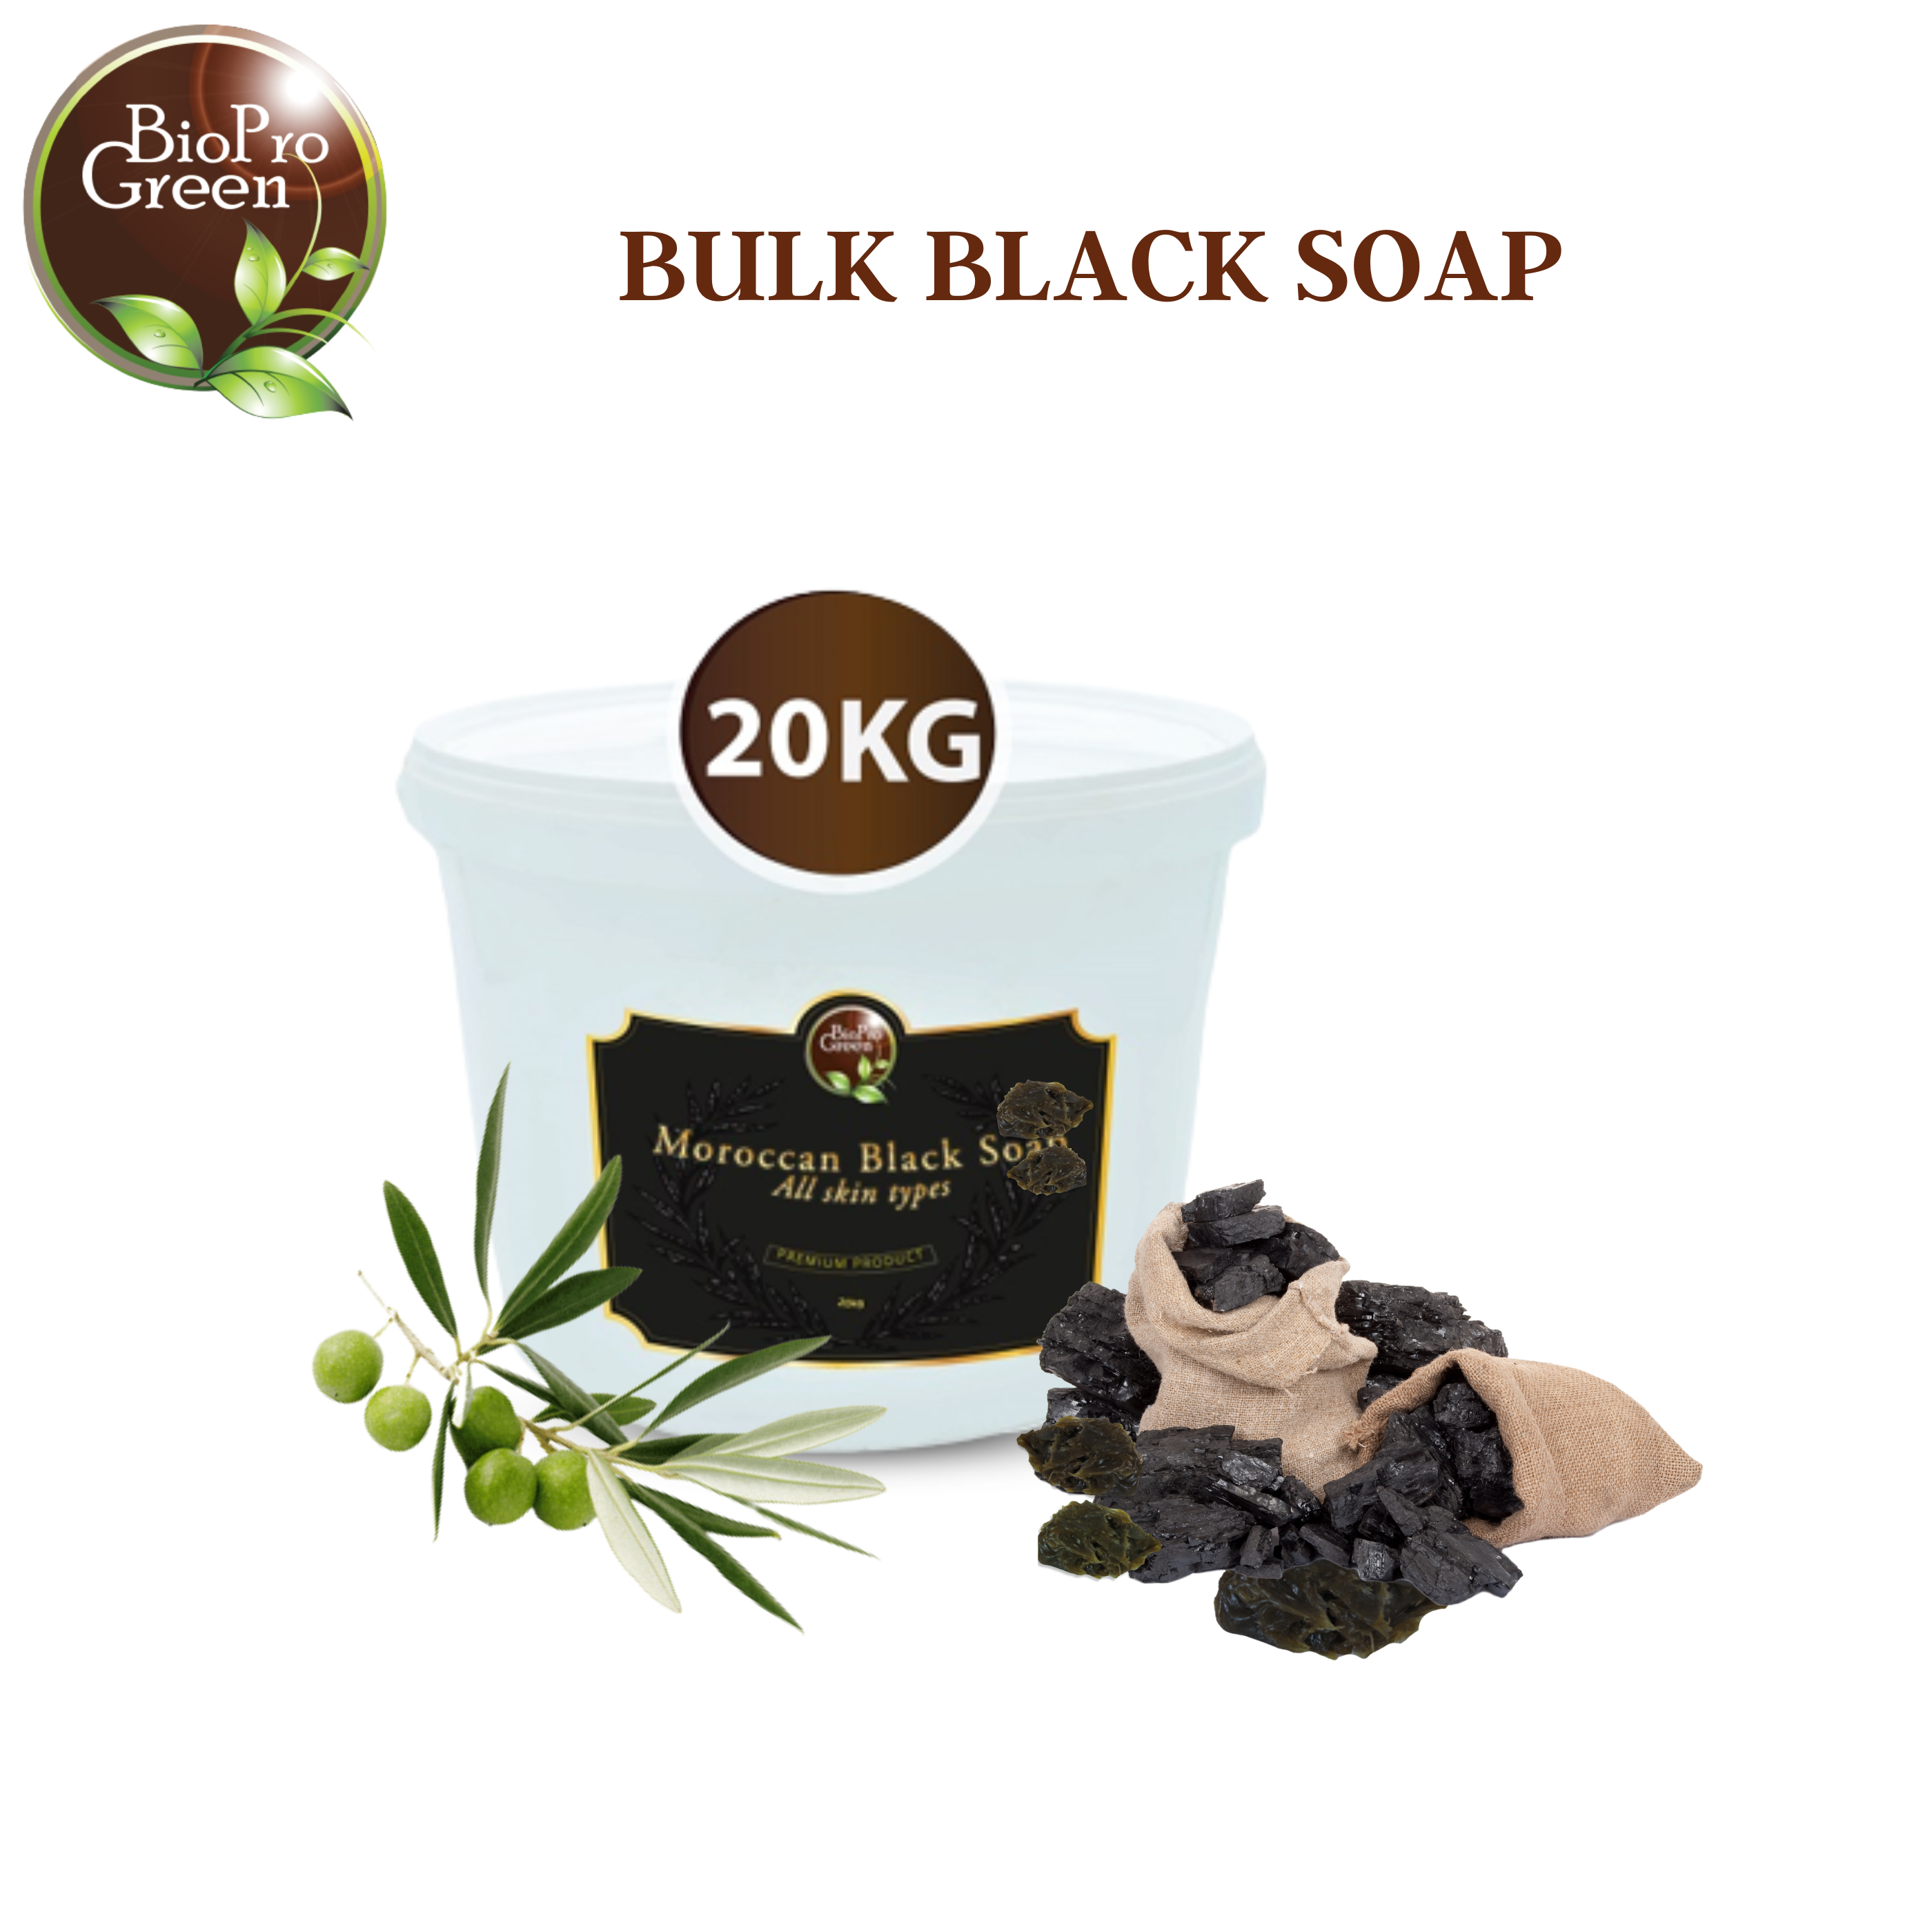  Black Soap in bulk